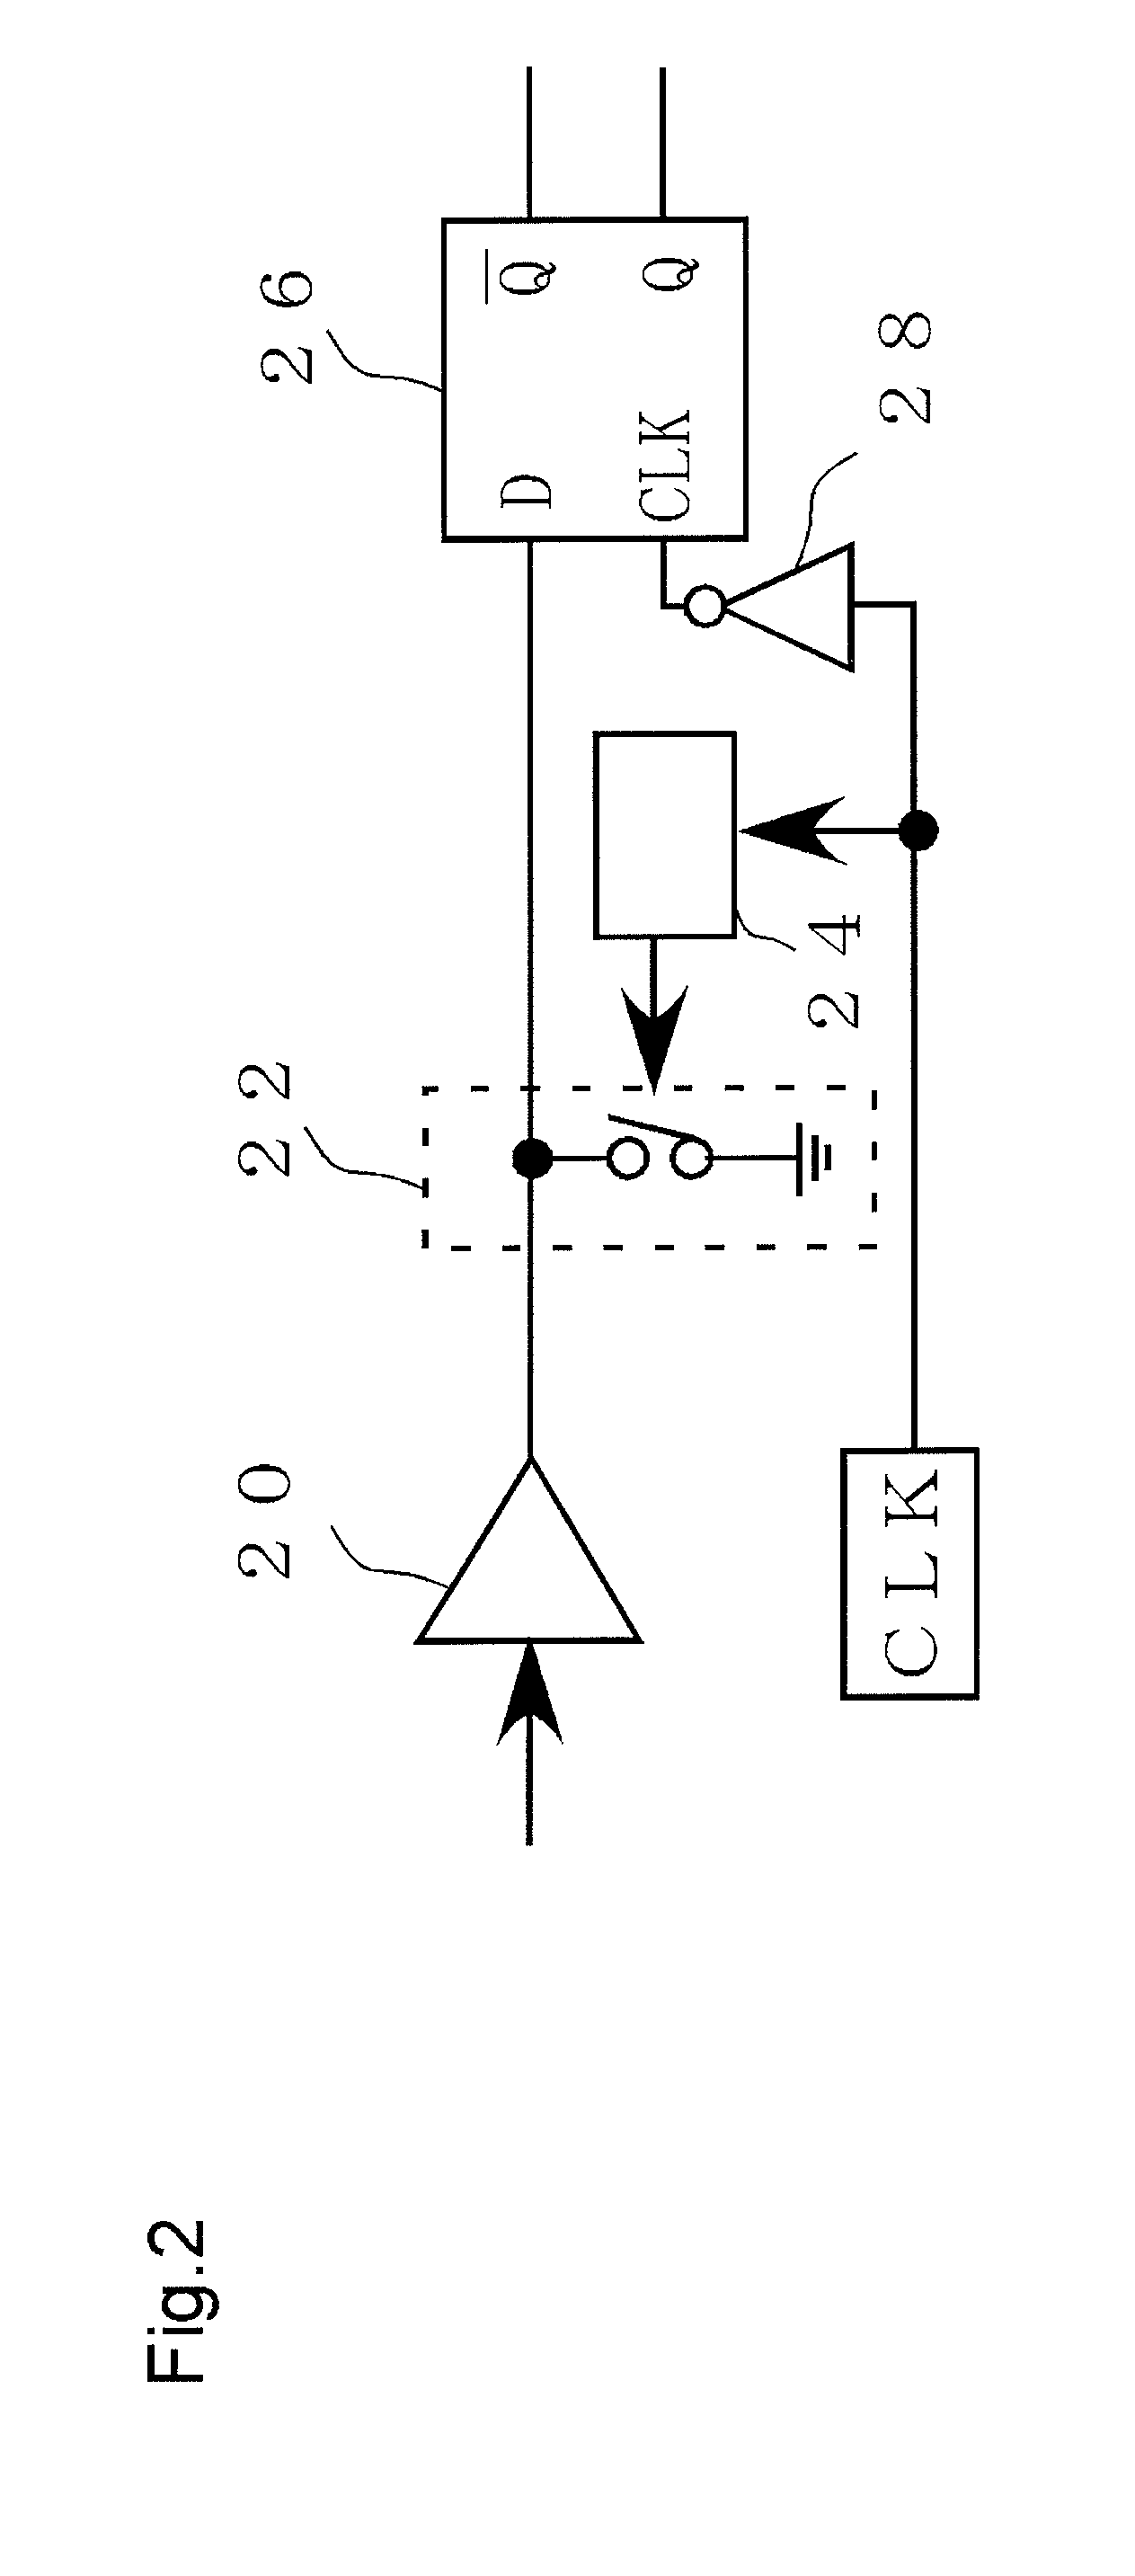 Signal modulation circuit